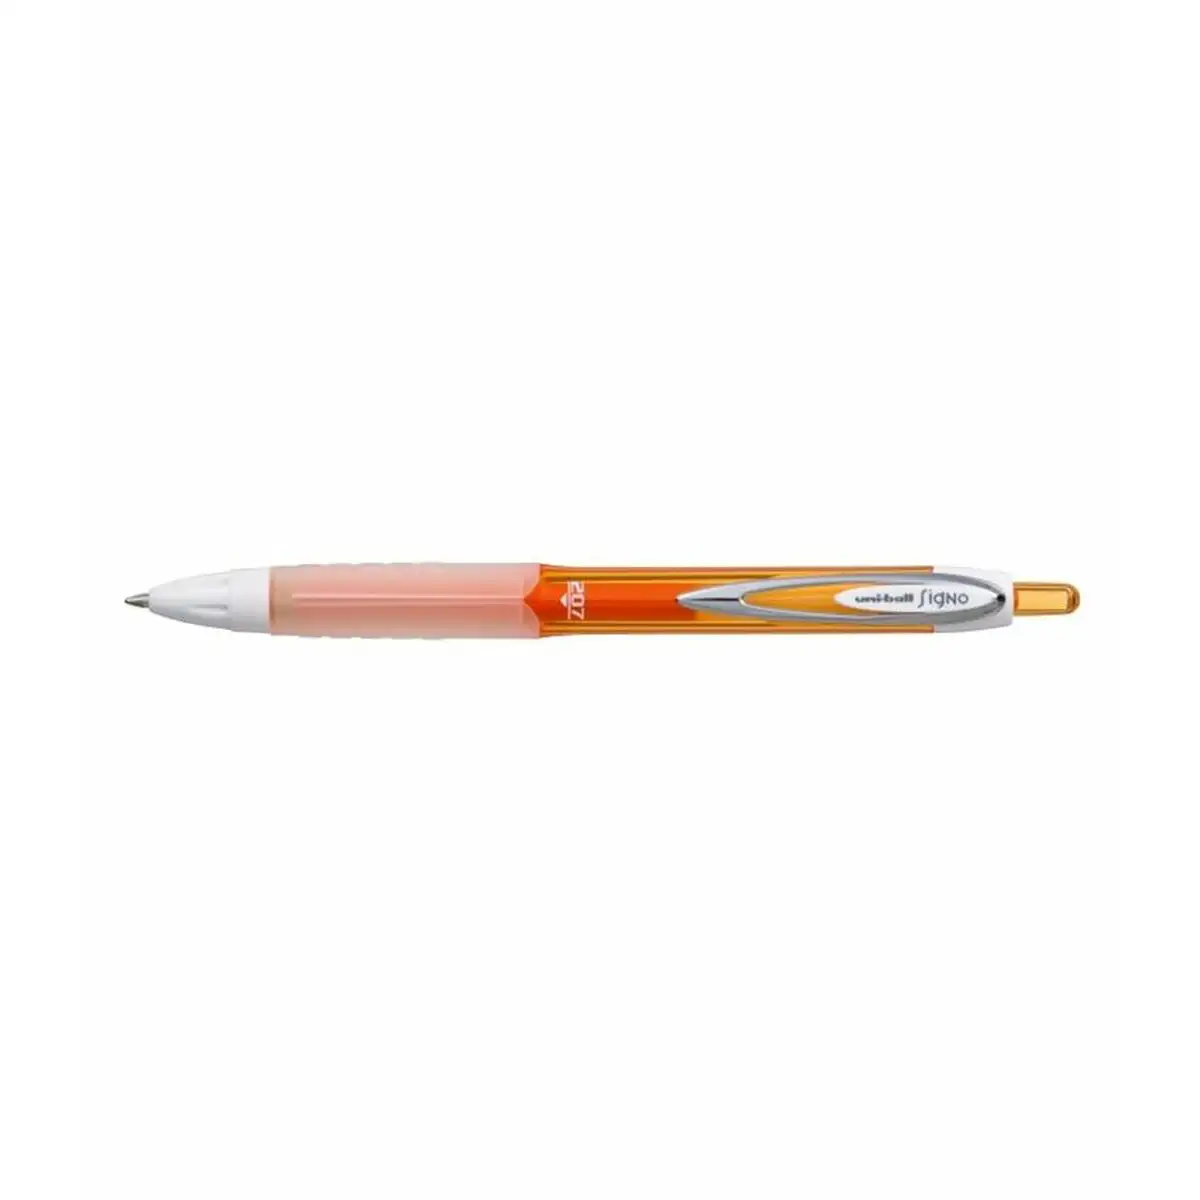 Crayon uni ball signo umn 207 orange 0 4 mm 12 unites _5433. DIAYTAR SENEGAL - Là où Chaque Produit Est une Trouvaille. Parcourez notre catalogue diversifié et découvrez des articles qui enrichiront votre quotidien, du pratique à l'insolite.